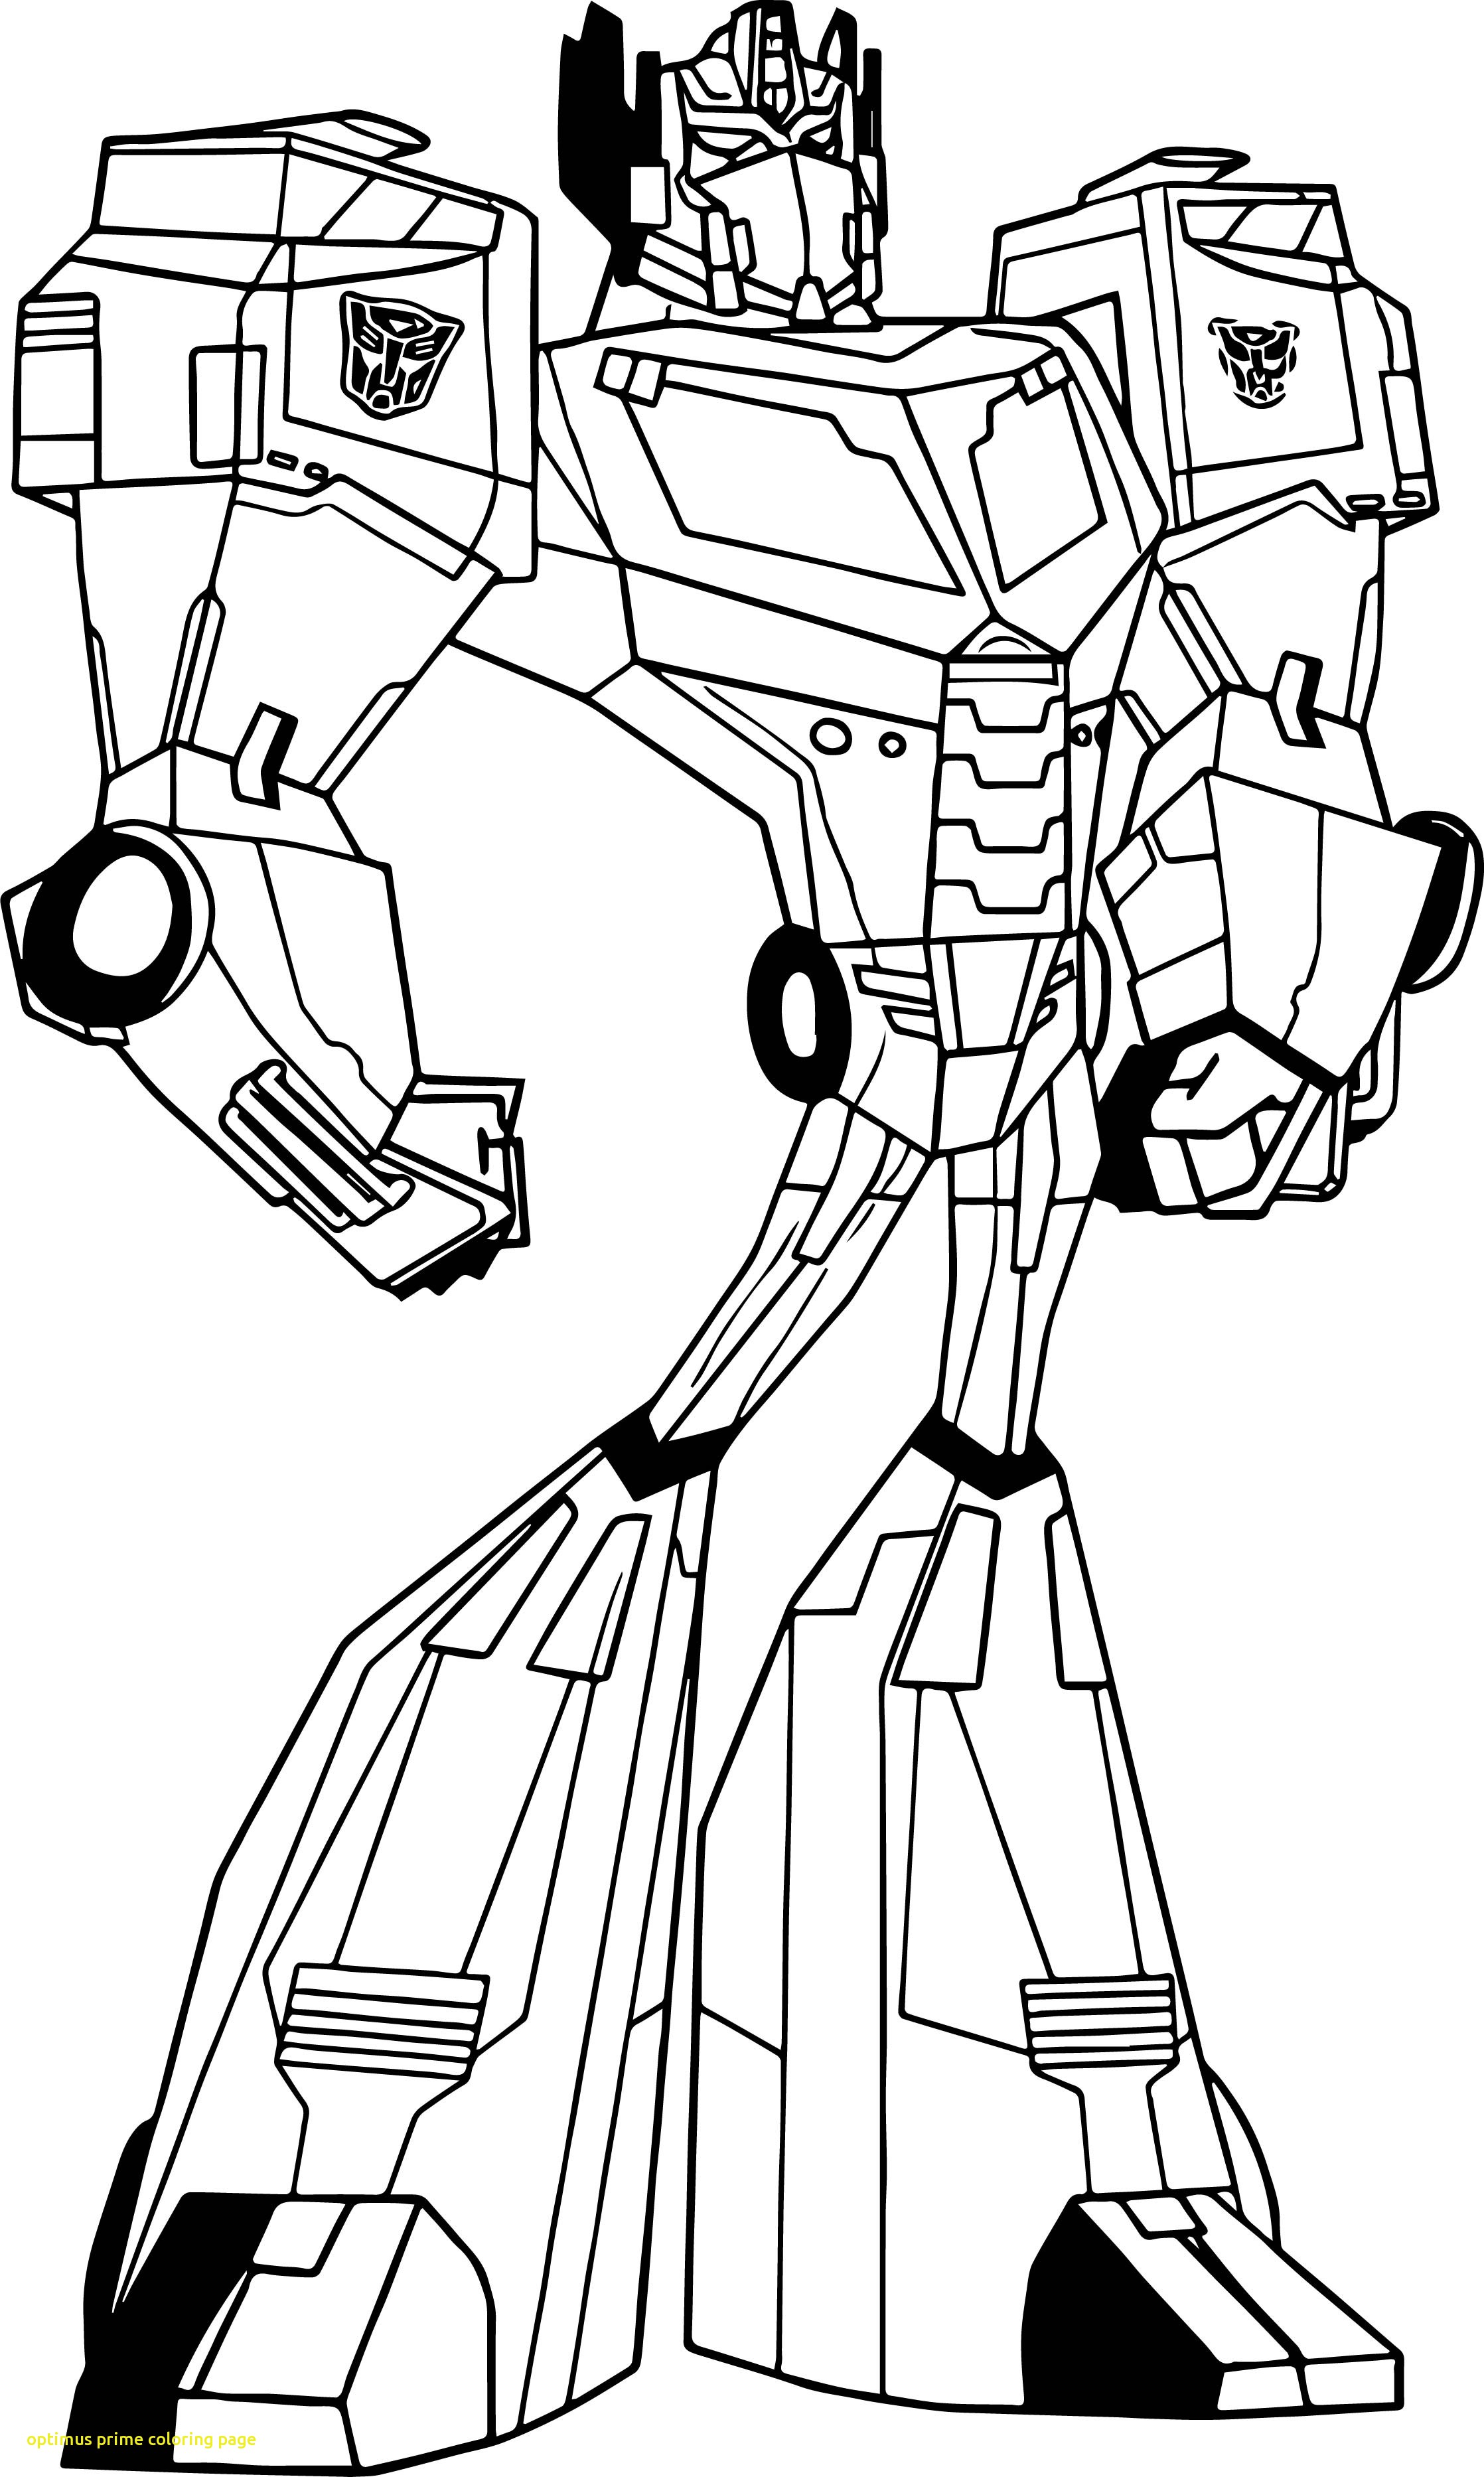 Optimus Prime Face Drawing at GetDrawings | Free download